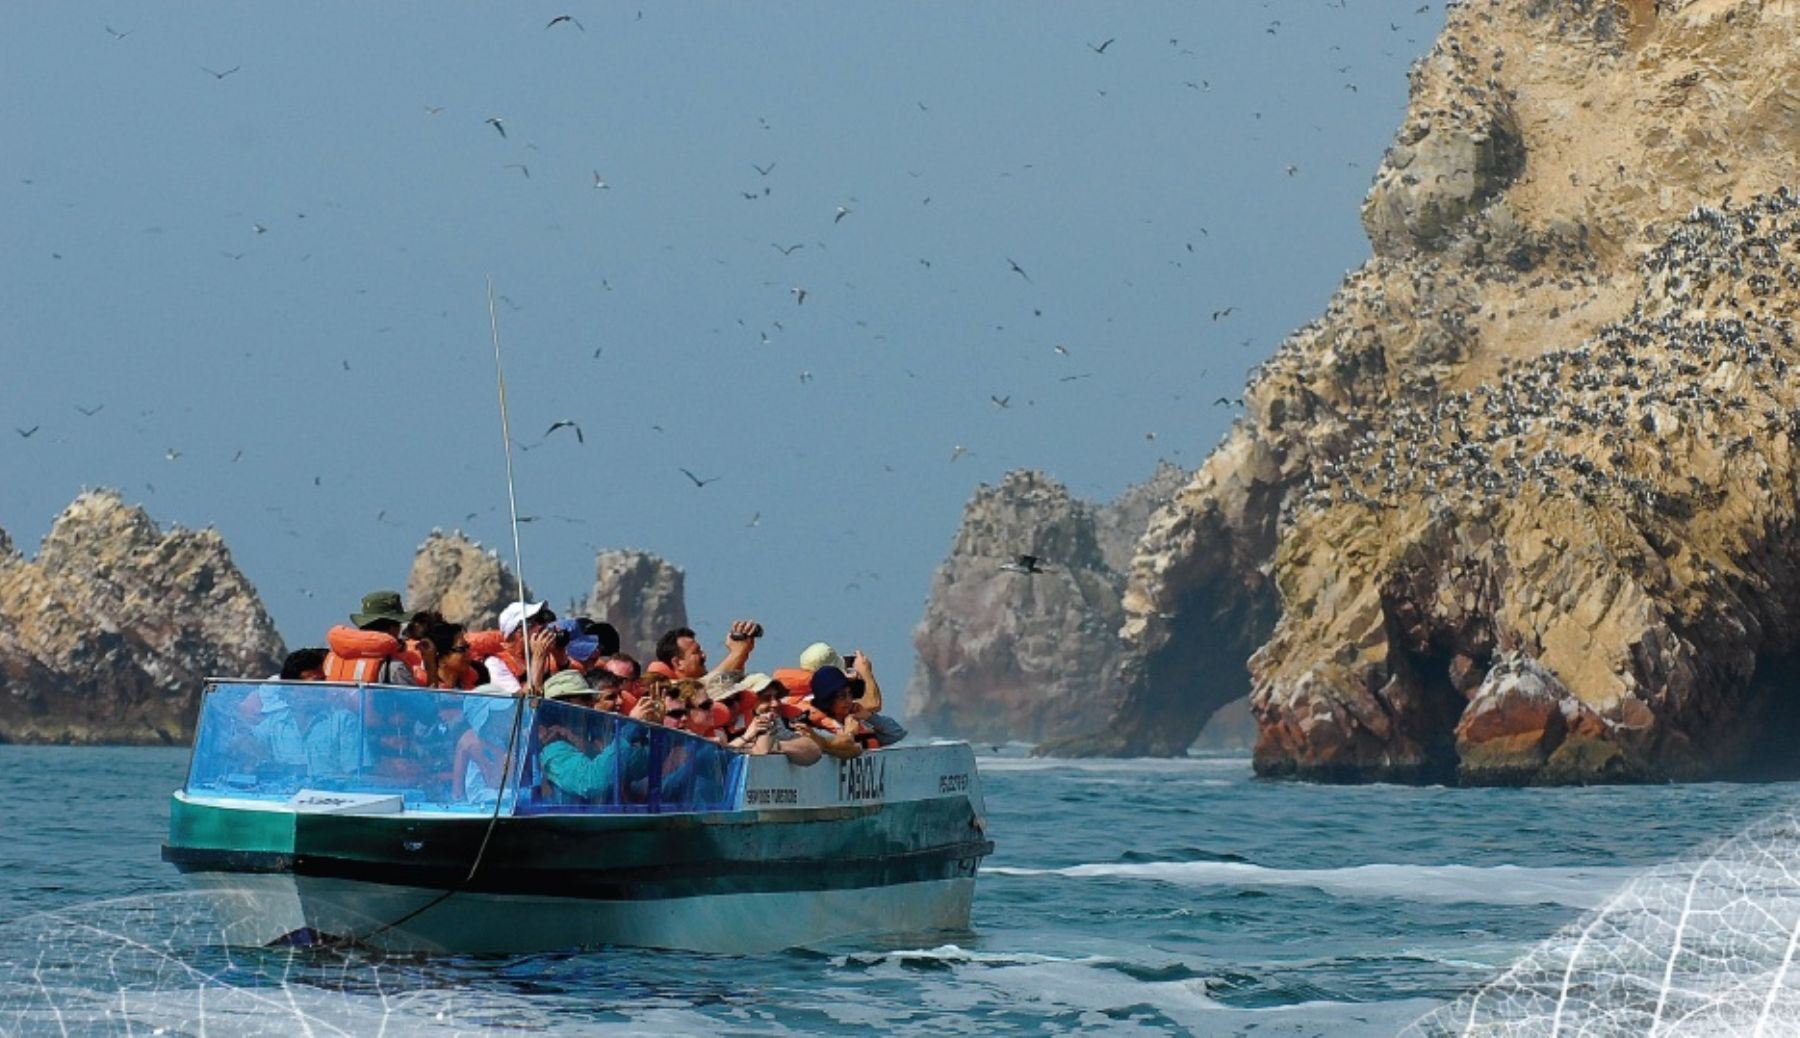 La Reserva Nacional de Paracas recibió más de 17,000 turistas, entre nacionales y extranjeros, durante el feriado largo por Semana Santa, informó hoy el jefe de esa área natural protegida Juan Carlos Heaton.